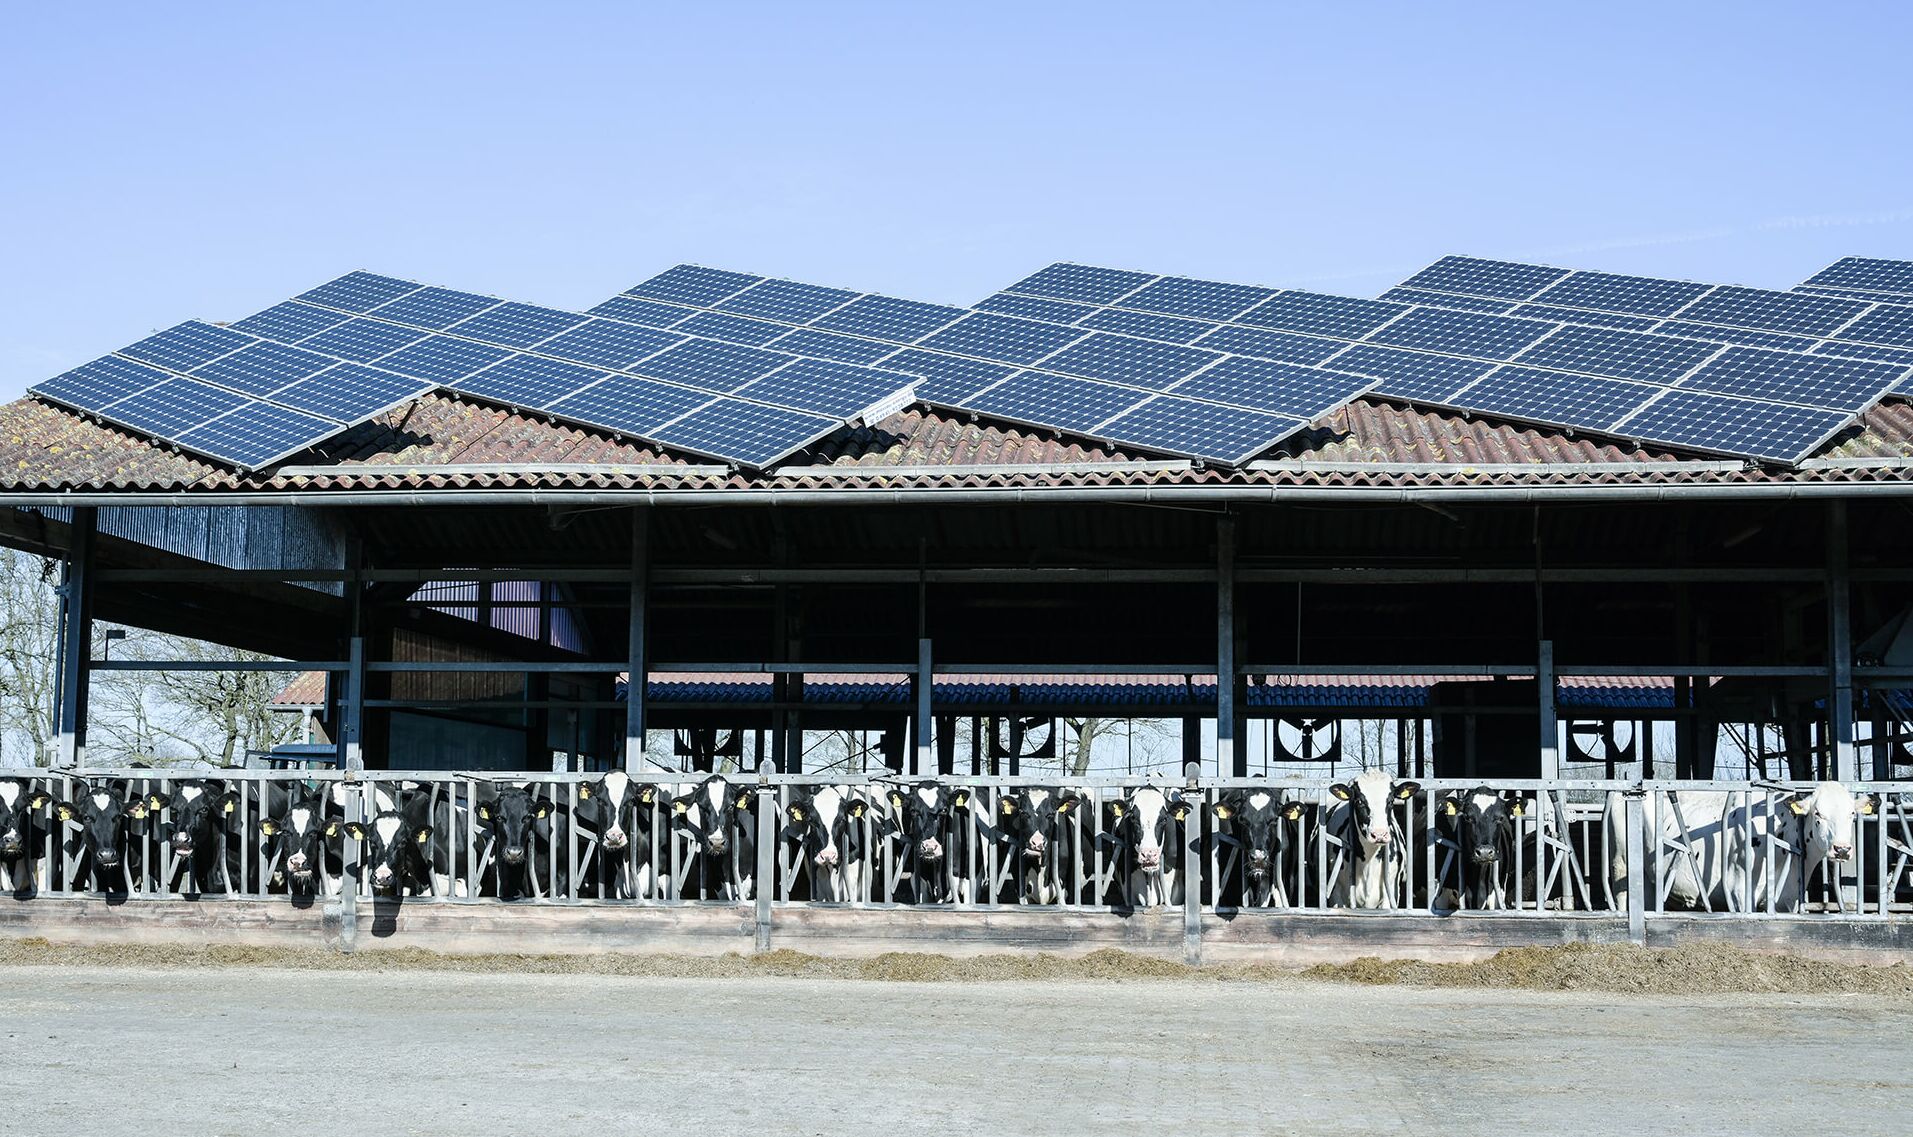 Kühe im Stall, Dach mit Photovoltaik